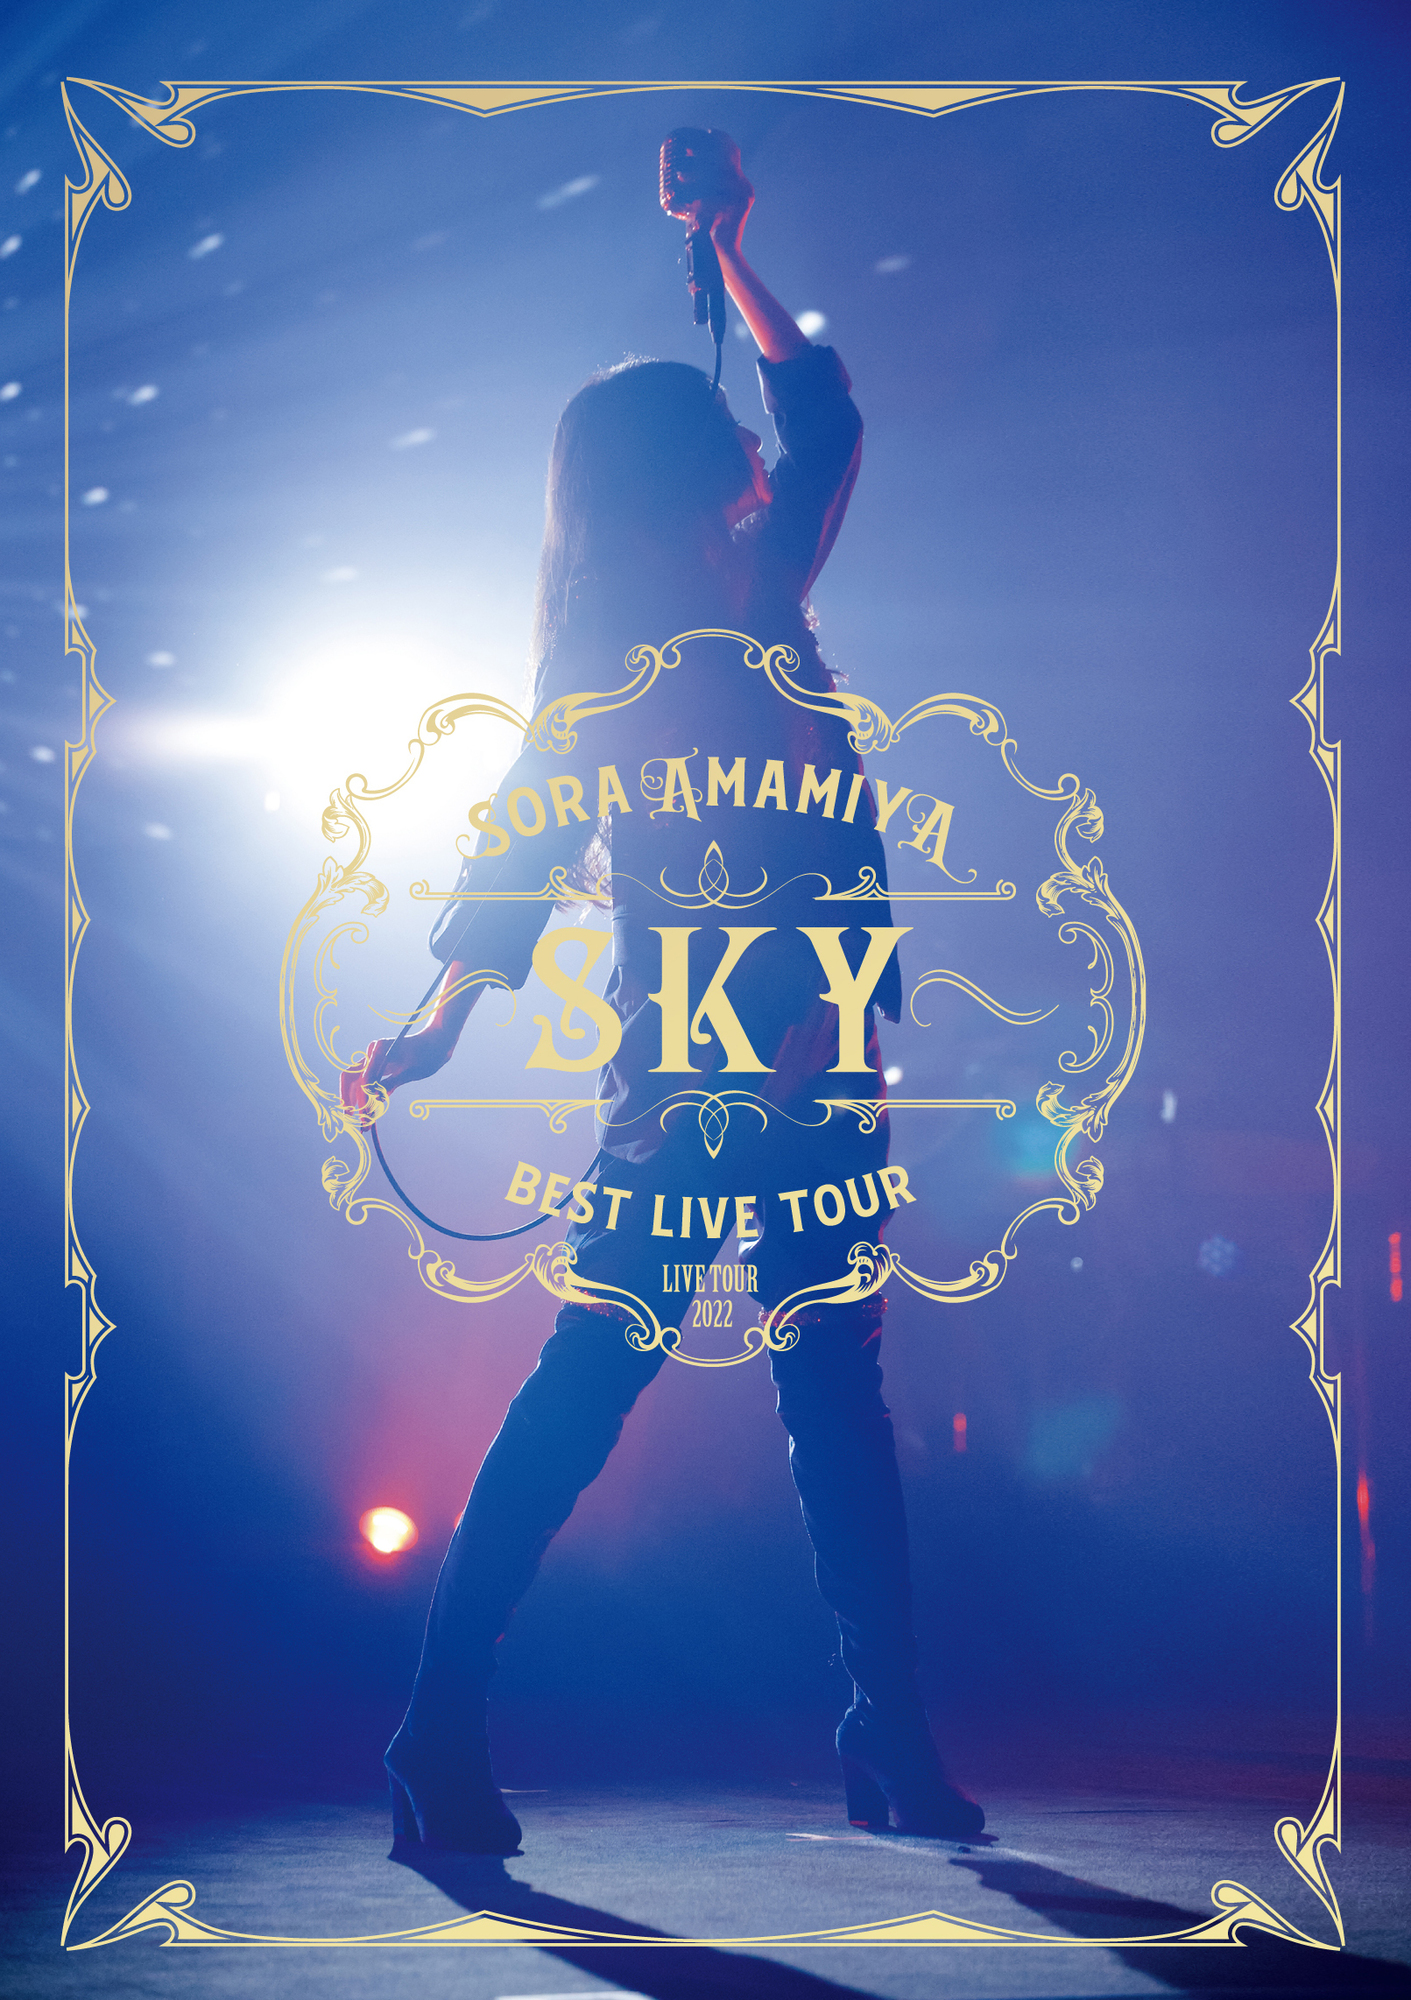 ライブBlu-ray「雨宮天ライブツアー2022 “BEST LIVE TOUR -SKY-“」9/28 